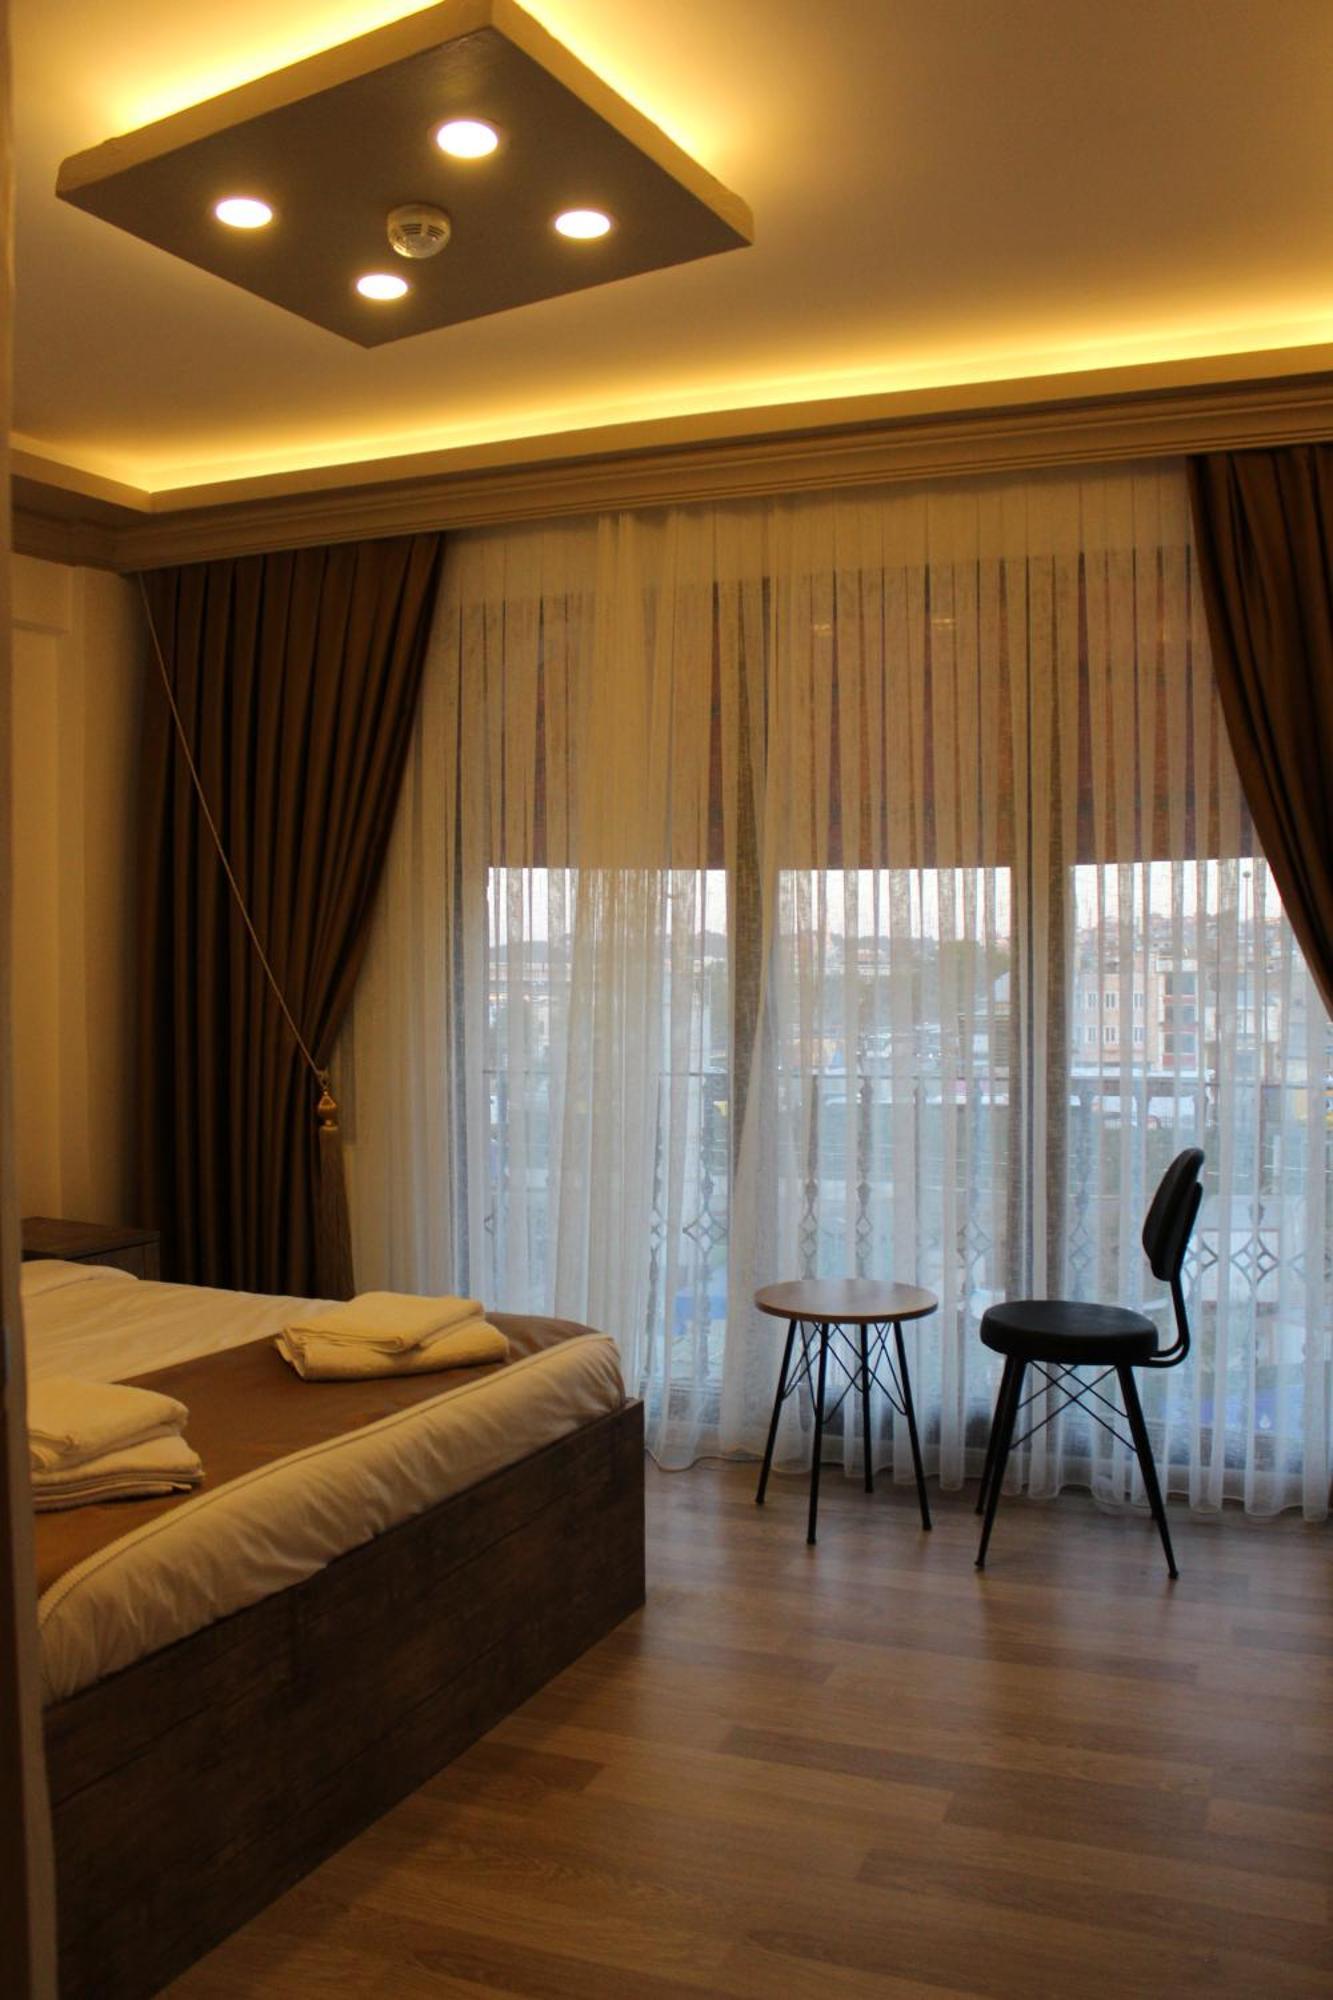 Vento Hotel 伊斯坦布尔 外观 照片